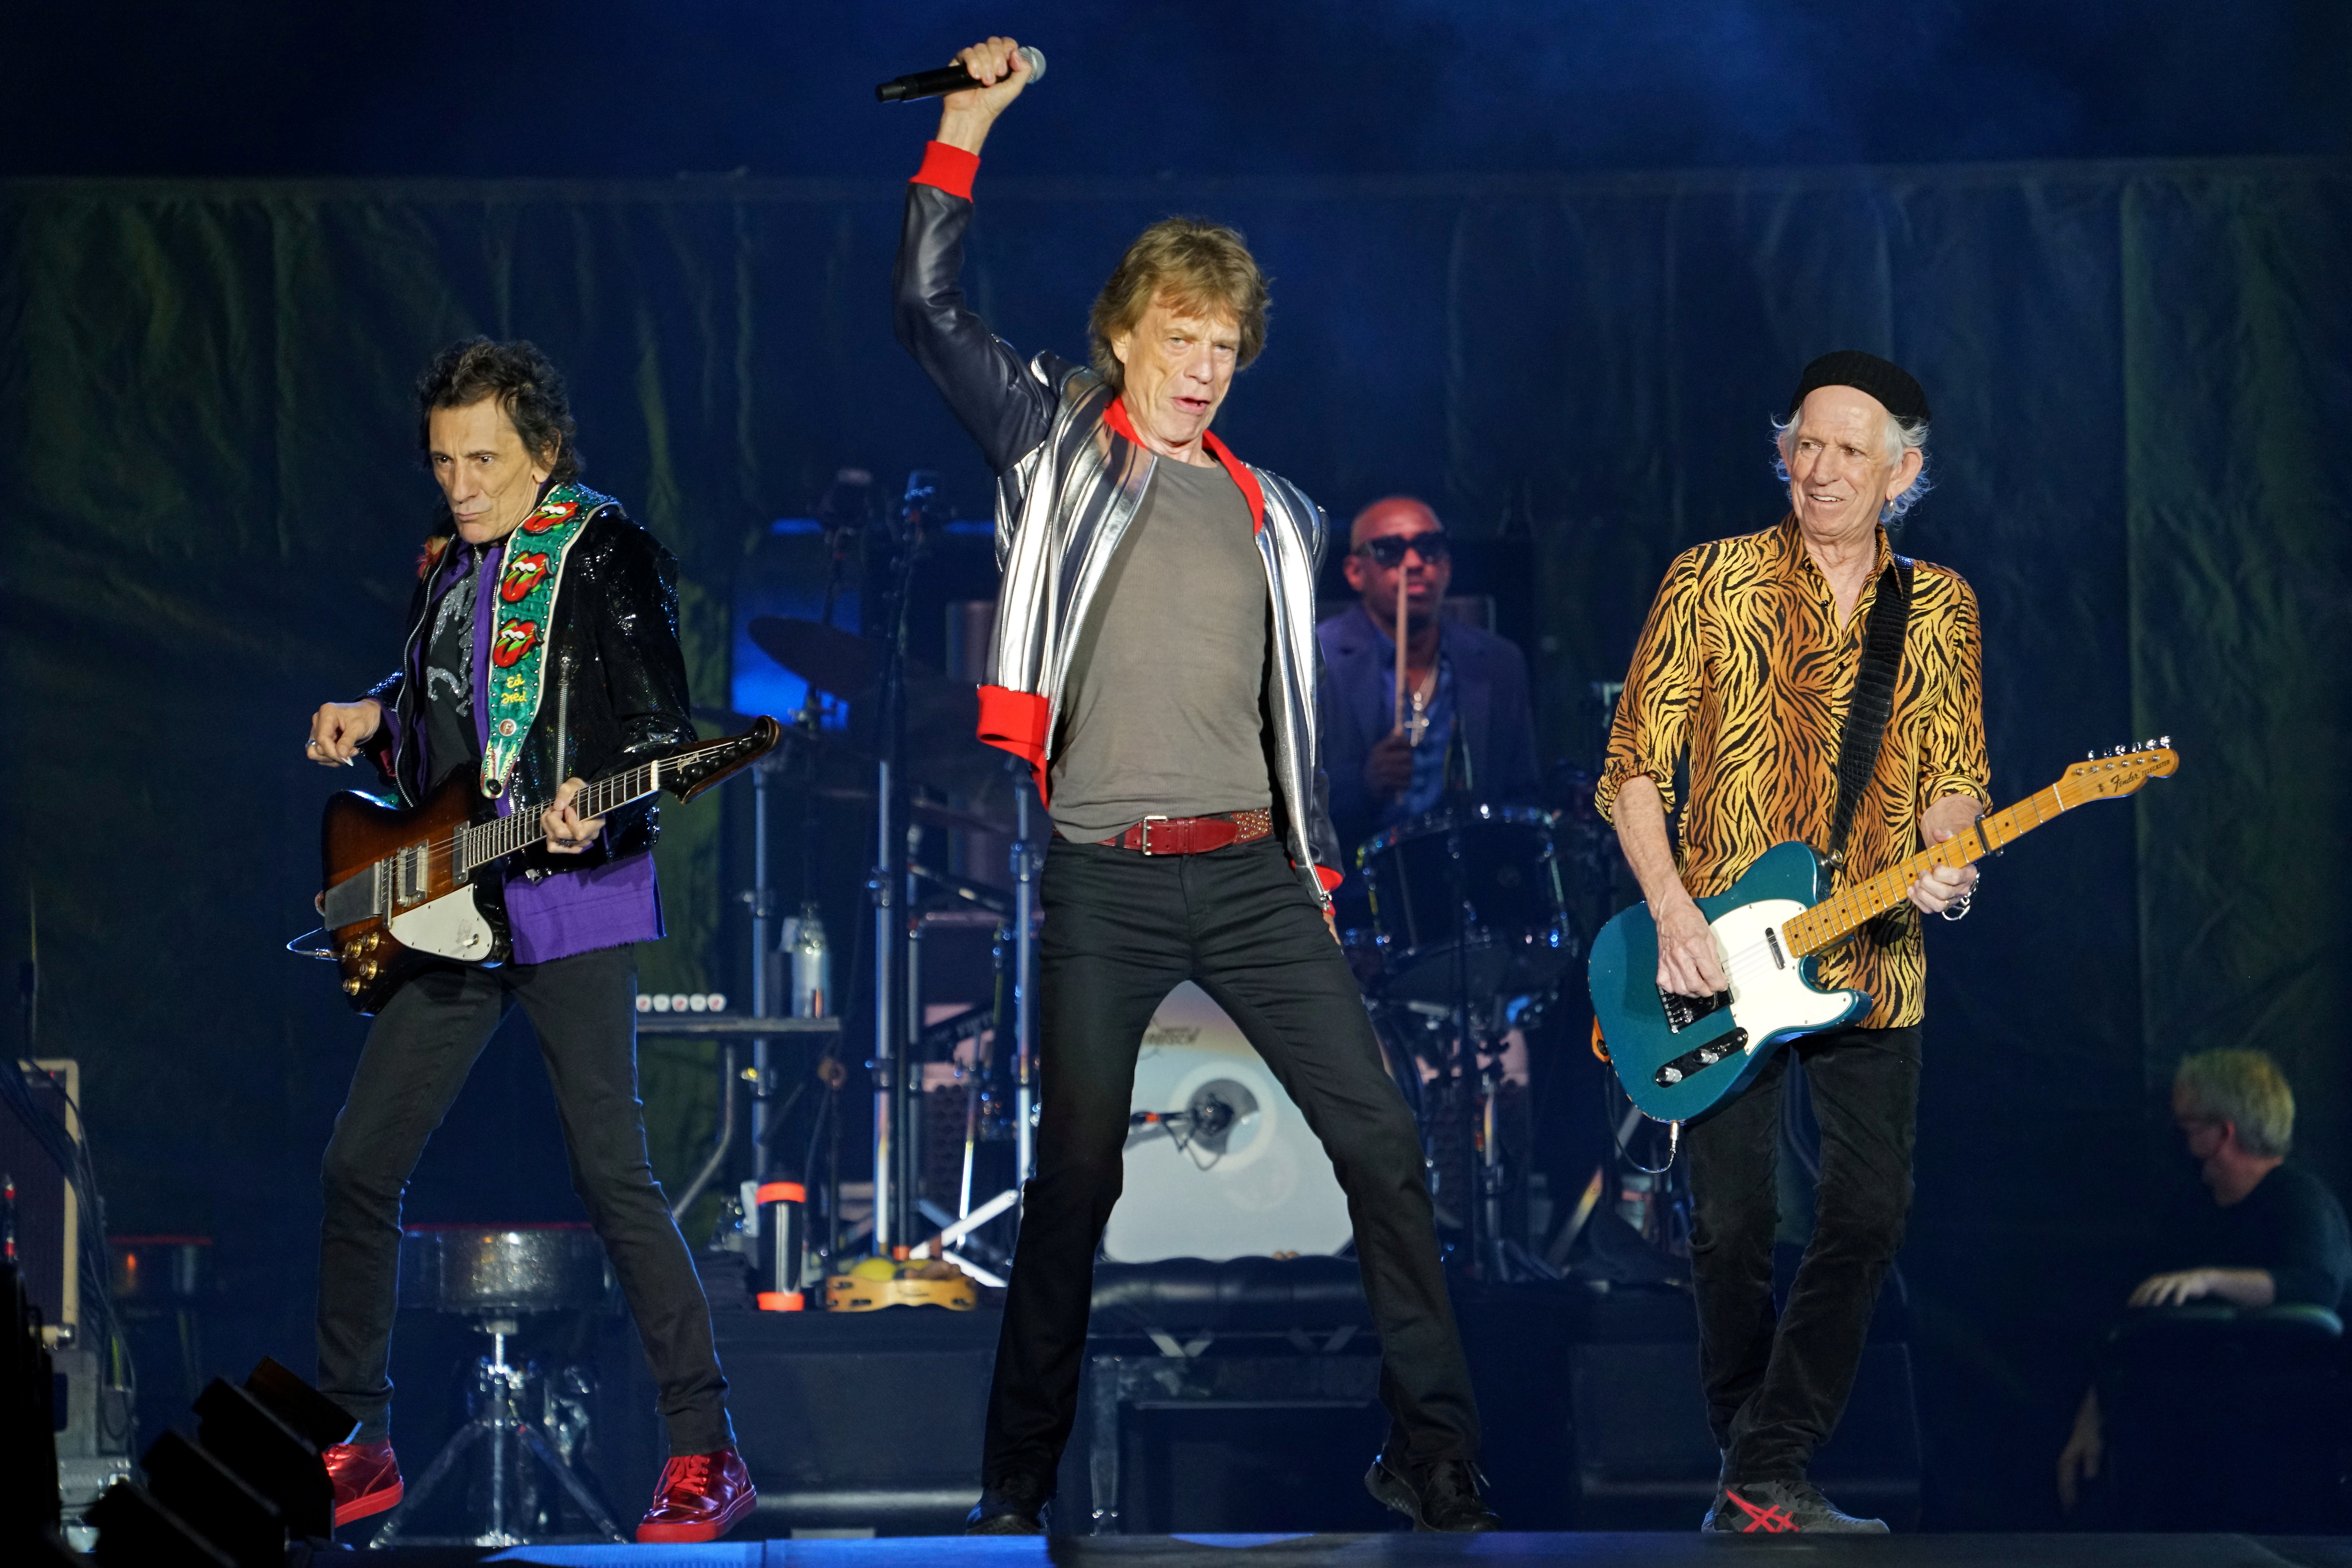 Las razones por las que los Rolling Stones decidieron no tocar más uno de sus más grandes éxitos